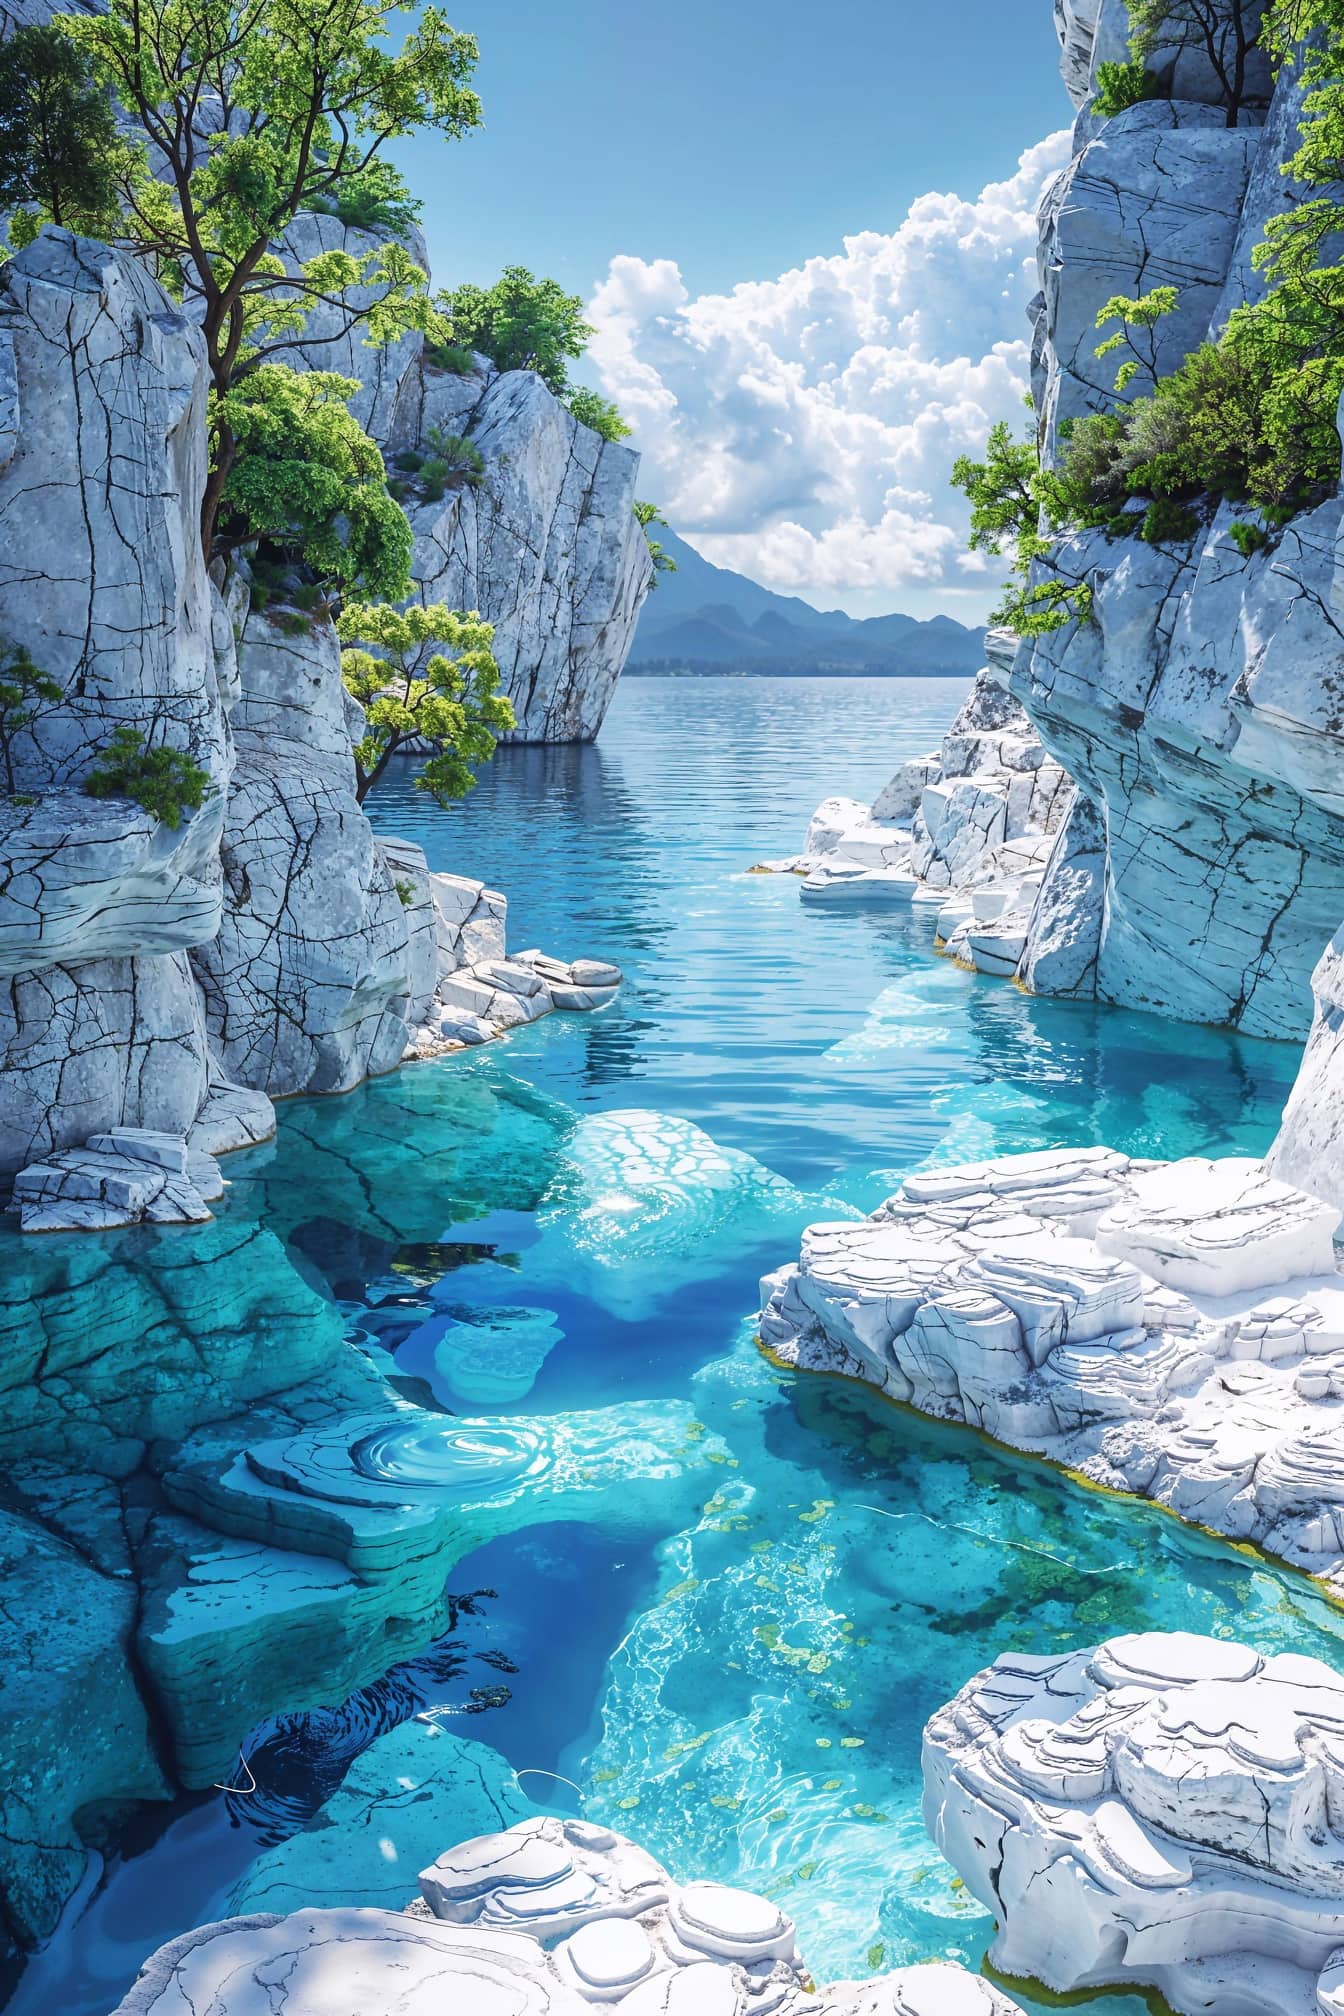 Impresionante gráfico de la bahía con rocas y árboles de mármol blanco